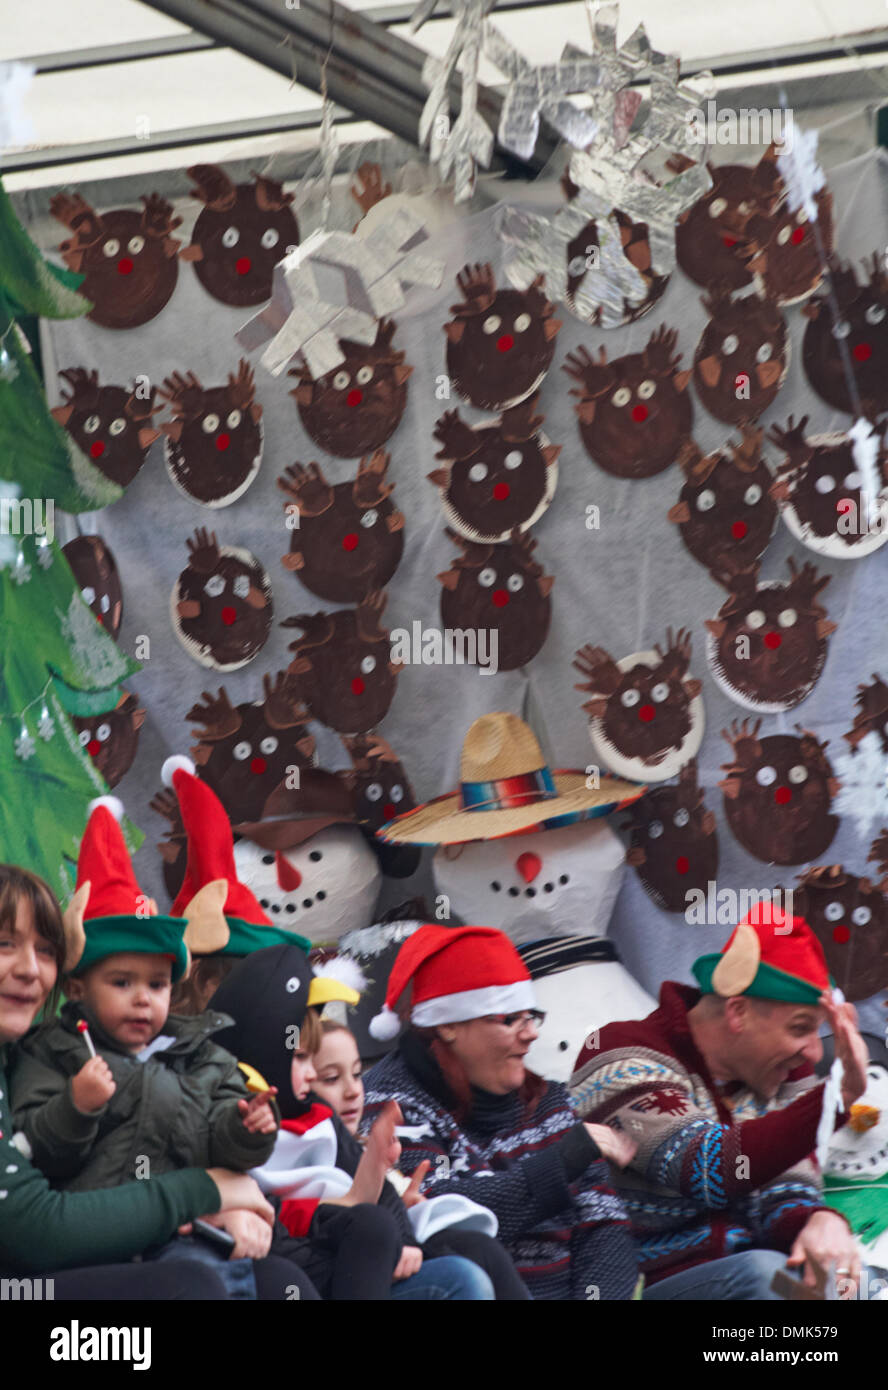 Wimborne, Dorset, Royaume-Uni. 14 décembre 2013. Les foules se détournent pour assister au 25ème défilé de Noël de Wimborne Save the Children. Les enfants en liberté portent des chapeaux Elf de Noël avec des bonhommes de neige et des rennes. Crédit : Carolyn Jenkins/Alay Live News Banque D'Images